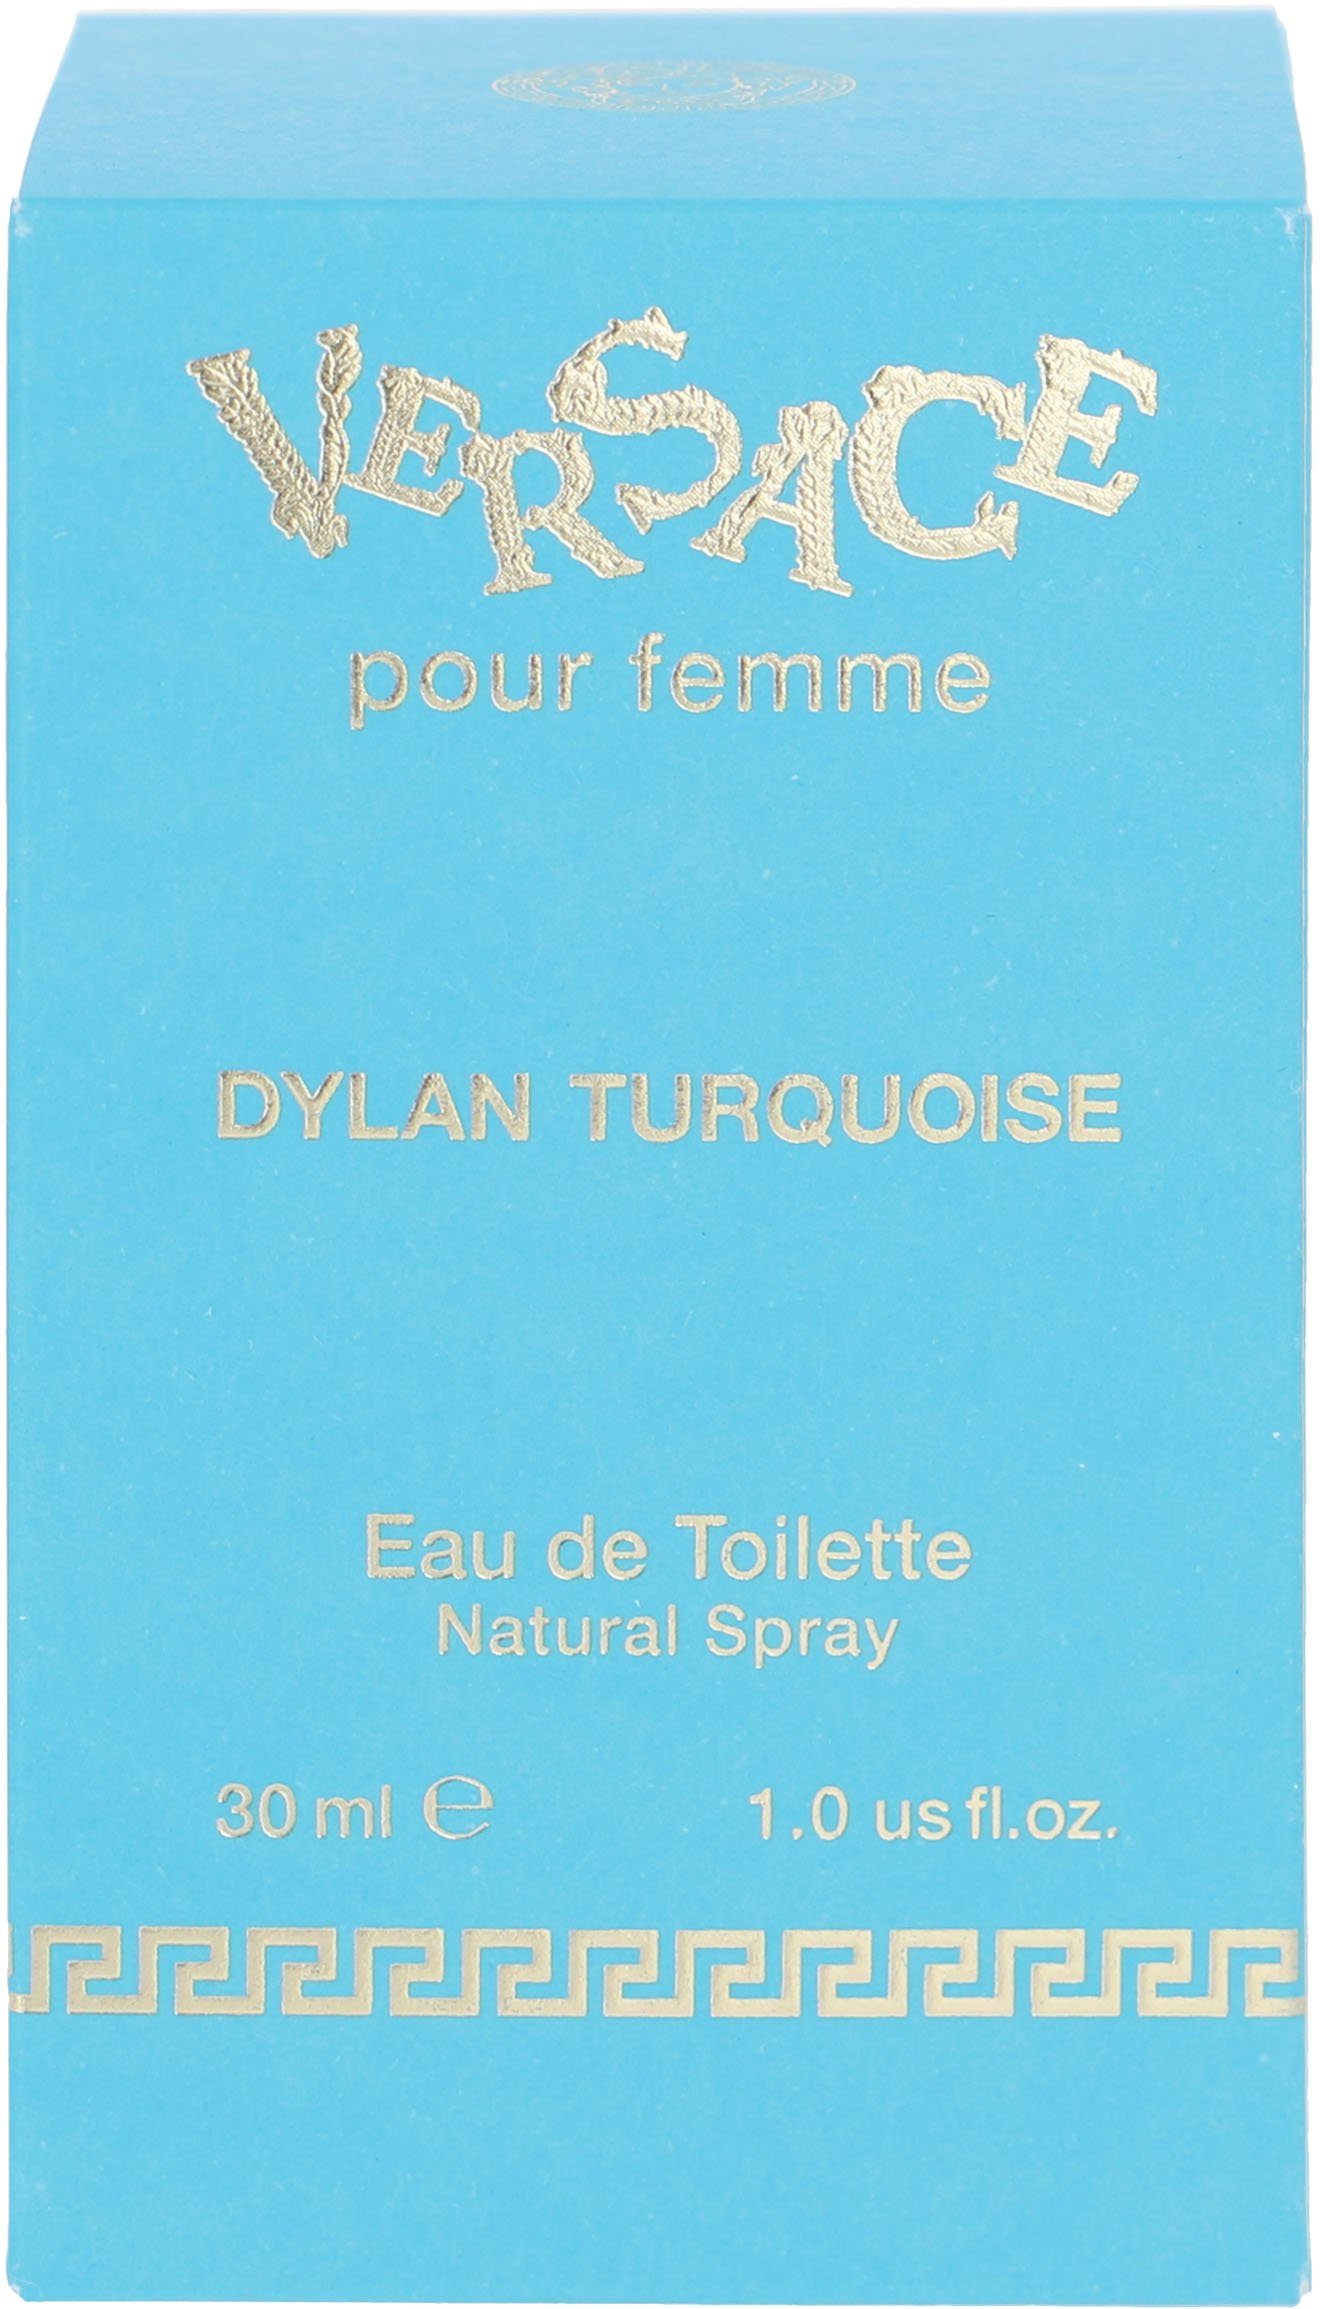 Versace Eau Turquoise de Versace Femme Dylan Toilette